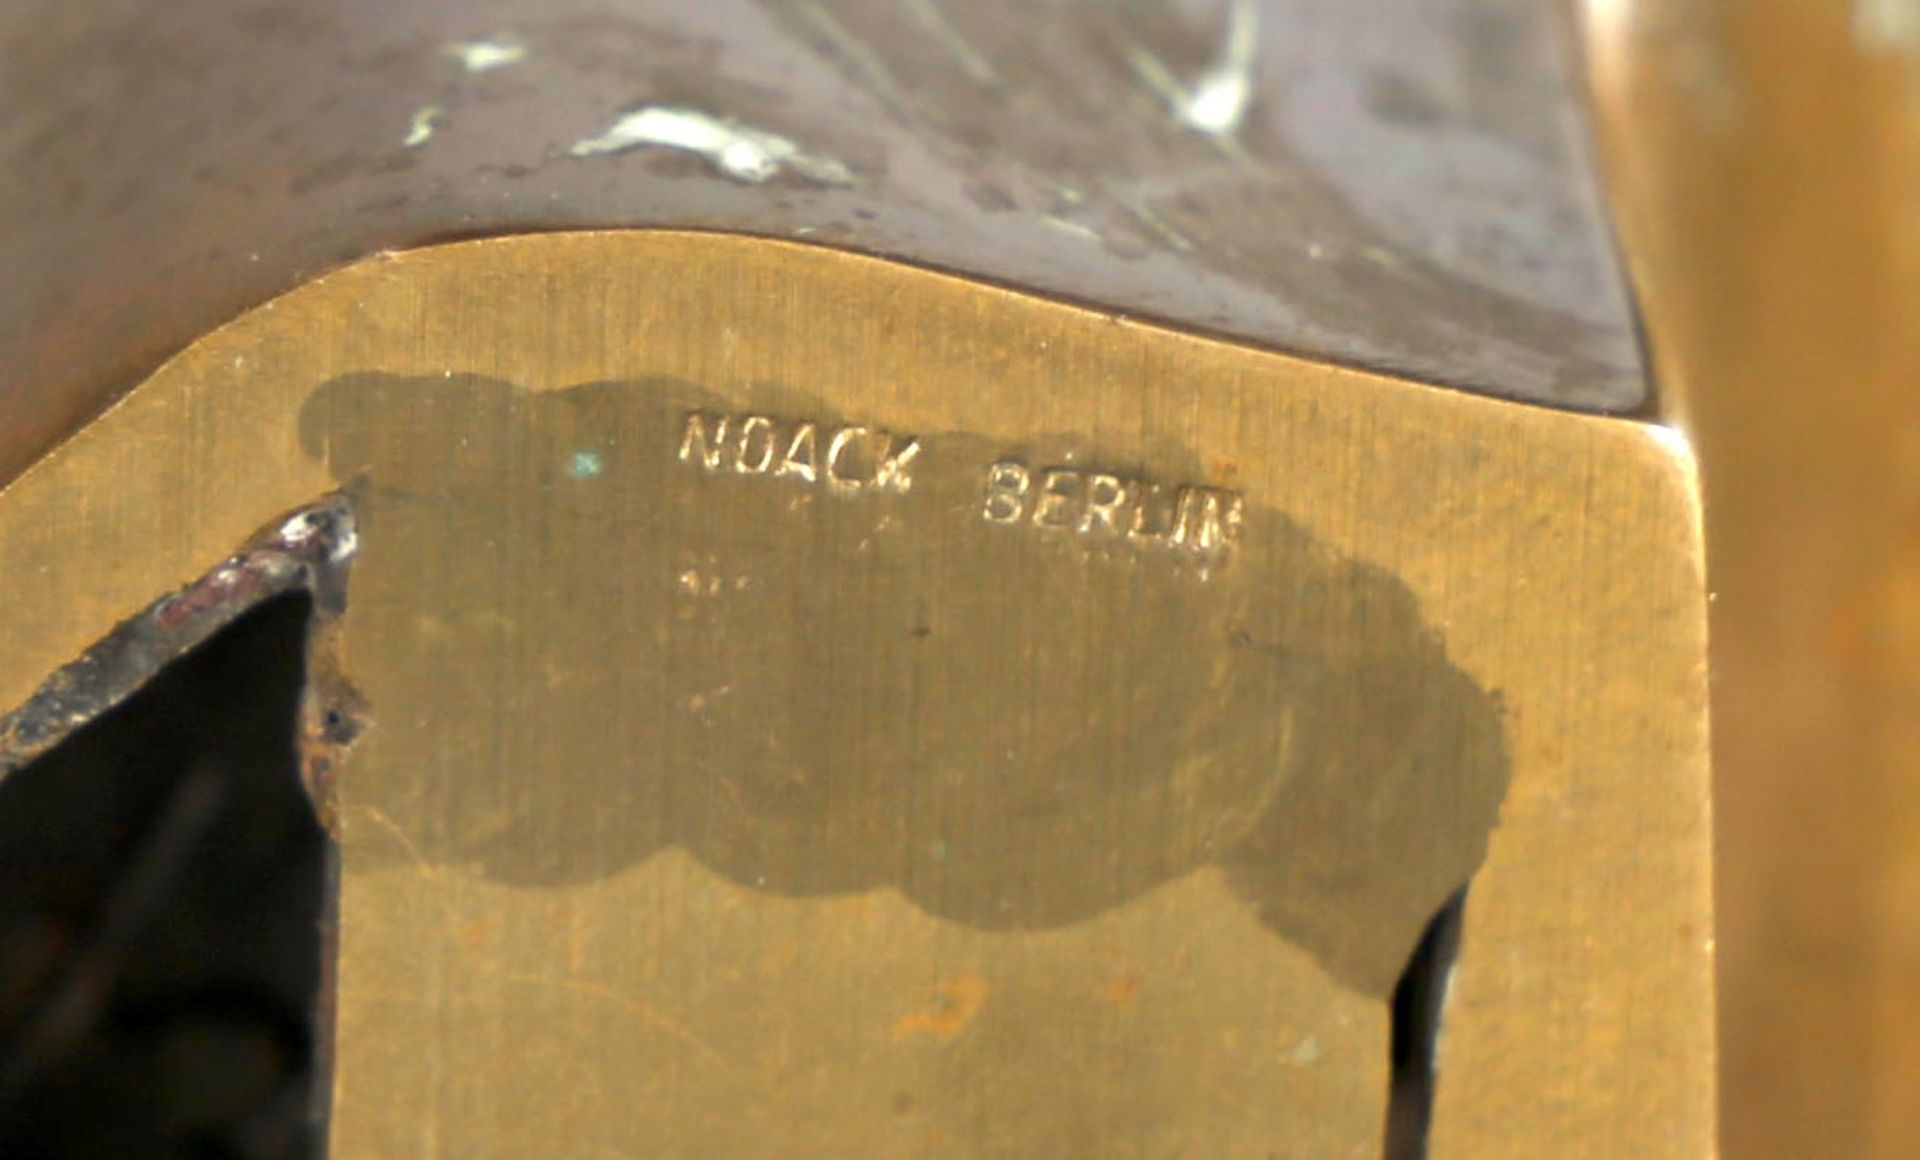 SaxSkulptur, Bronze, 1971, Exemplar 2 von 3, 11,5 x 14 cm, H: 7 cm, auf Unterseite signiert SAX 71 - Bild 2 aus 2